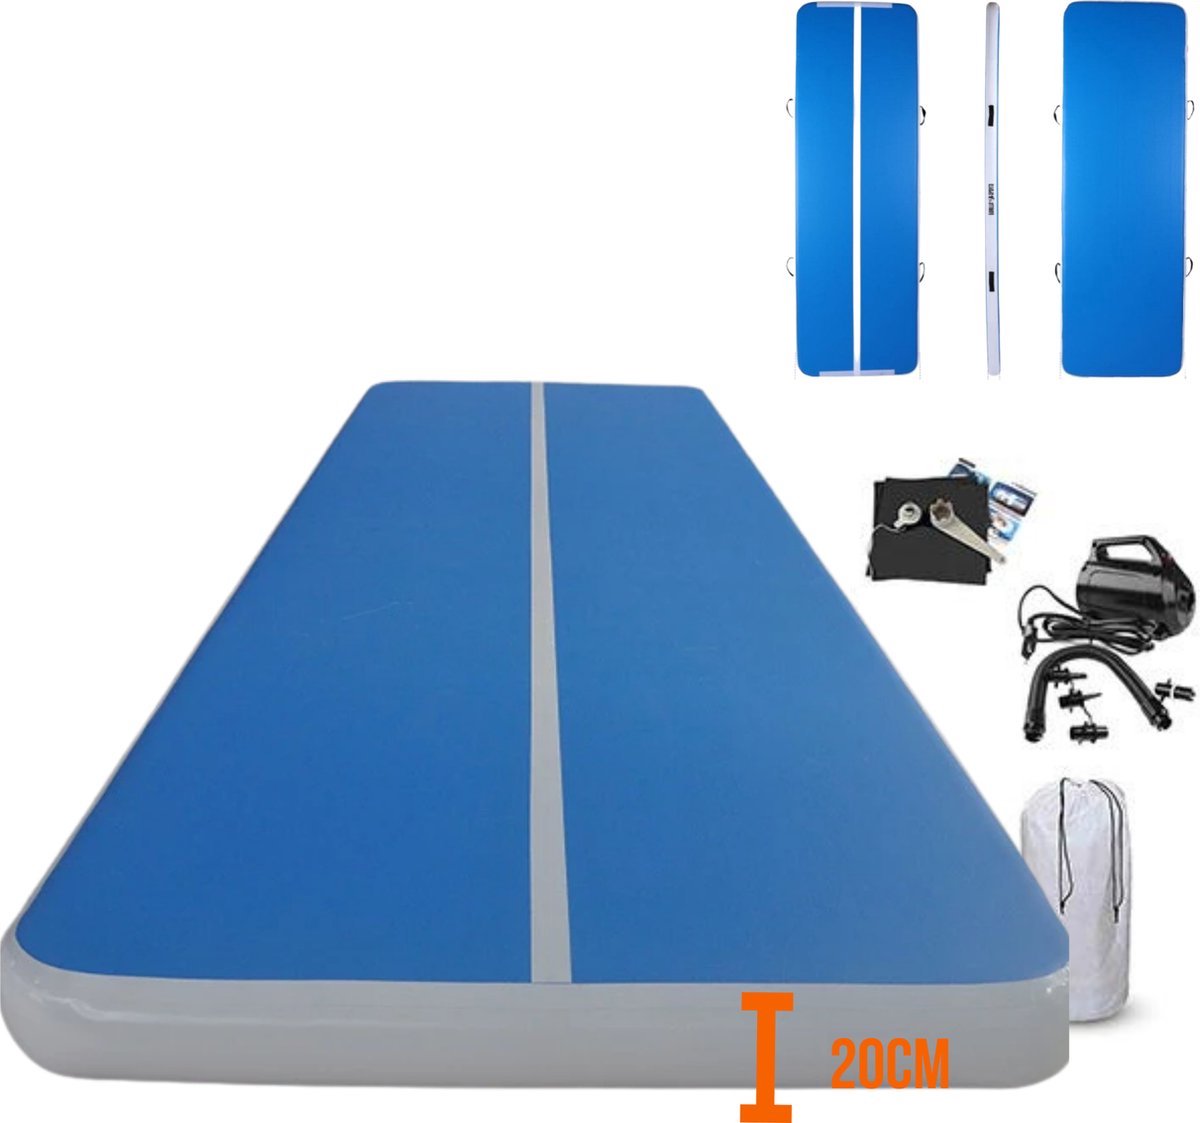 Practics - Airtrack 300cm x 100cm x 20cm Blauw - Turnmat Opblaasbaar incl Elektrische pomp & Opbergzak